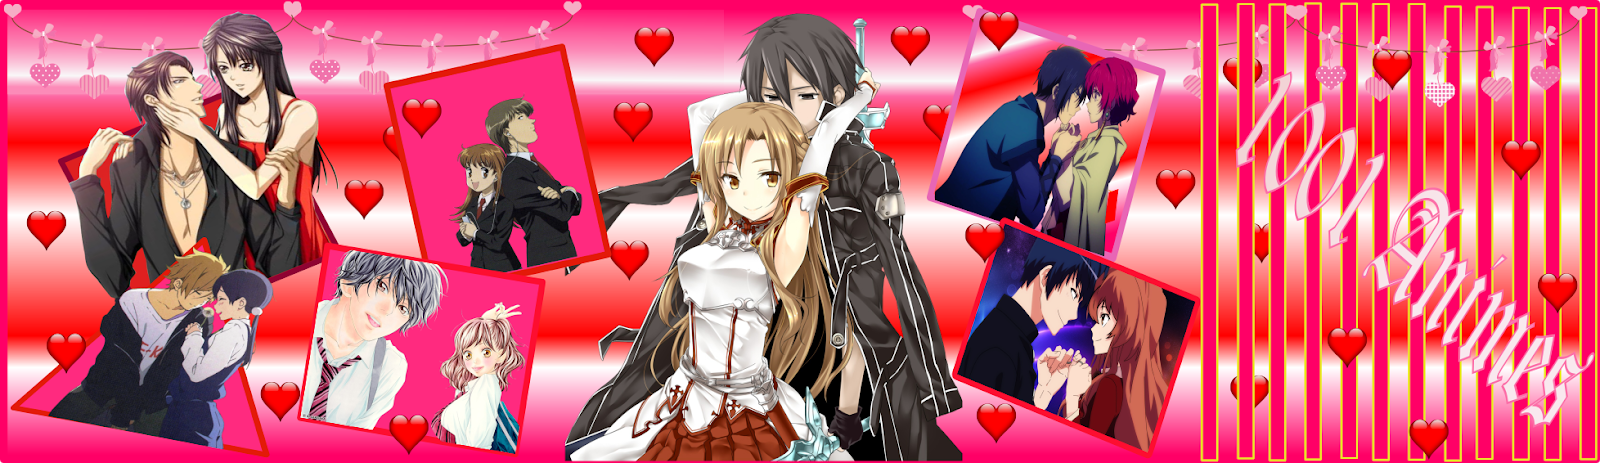 1001 Animes: Romance